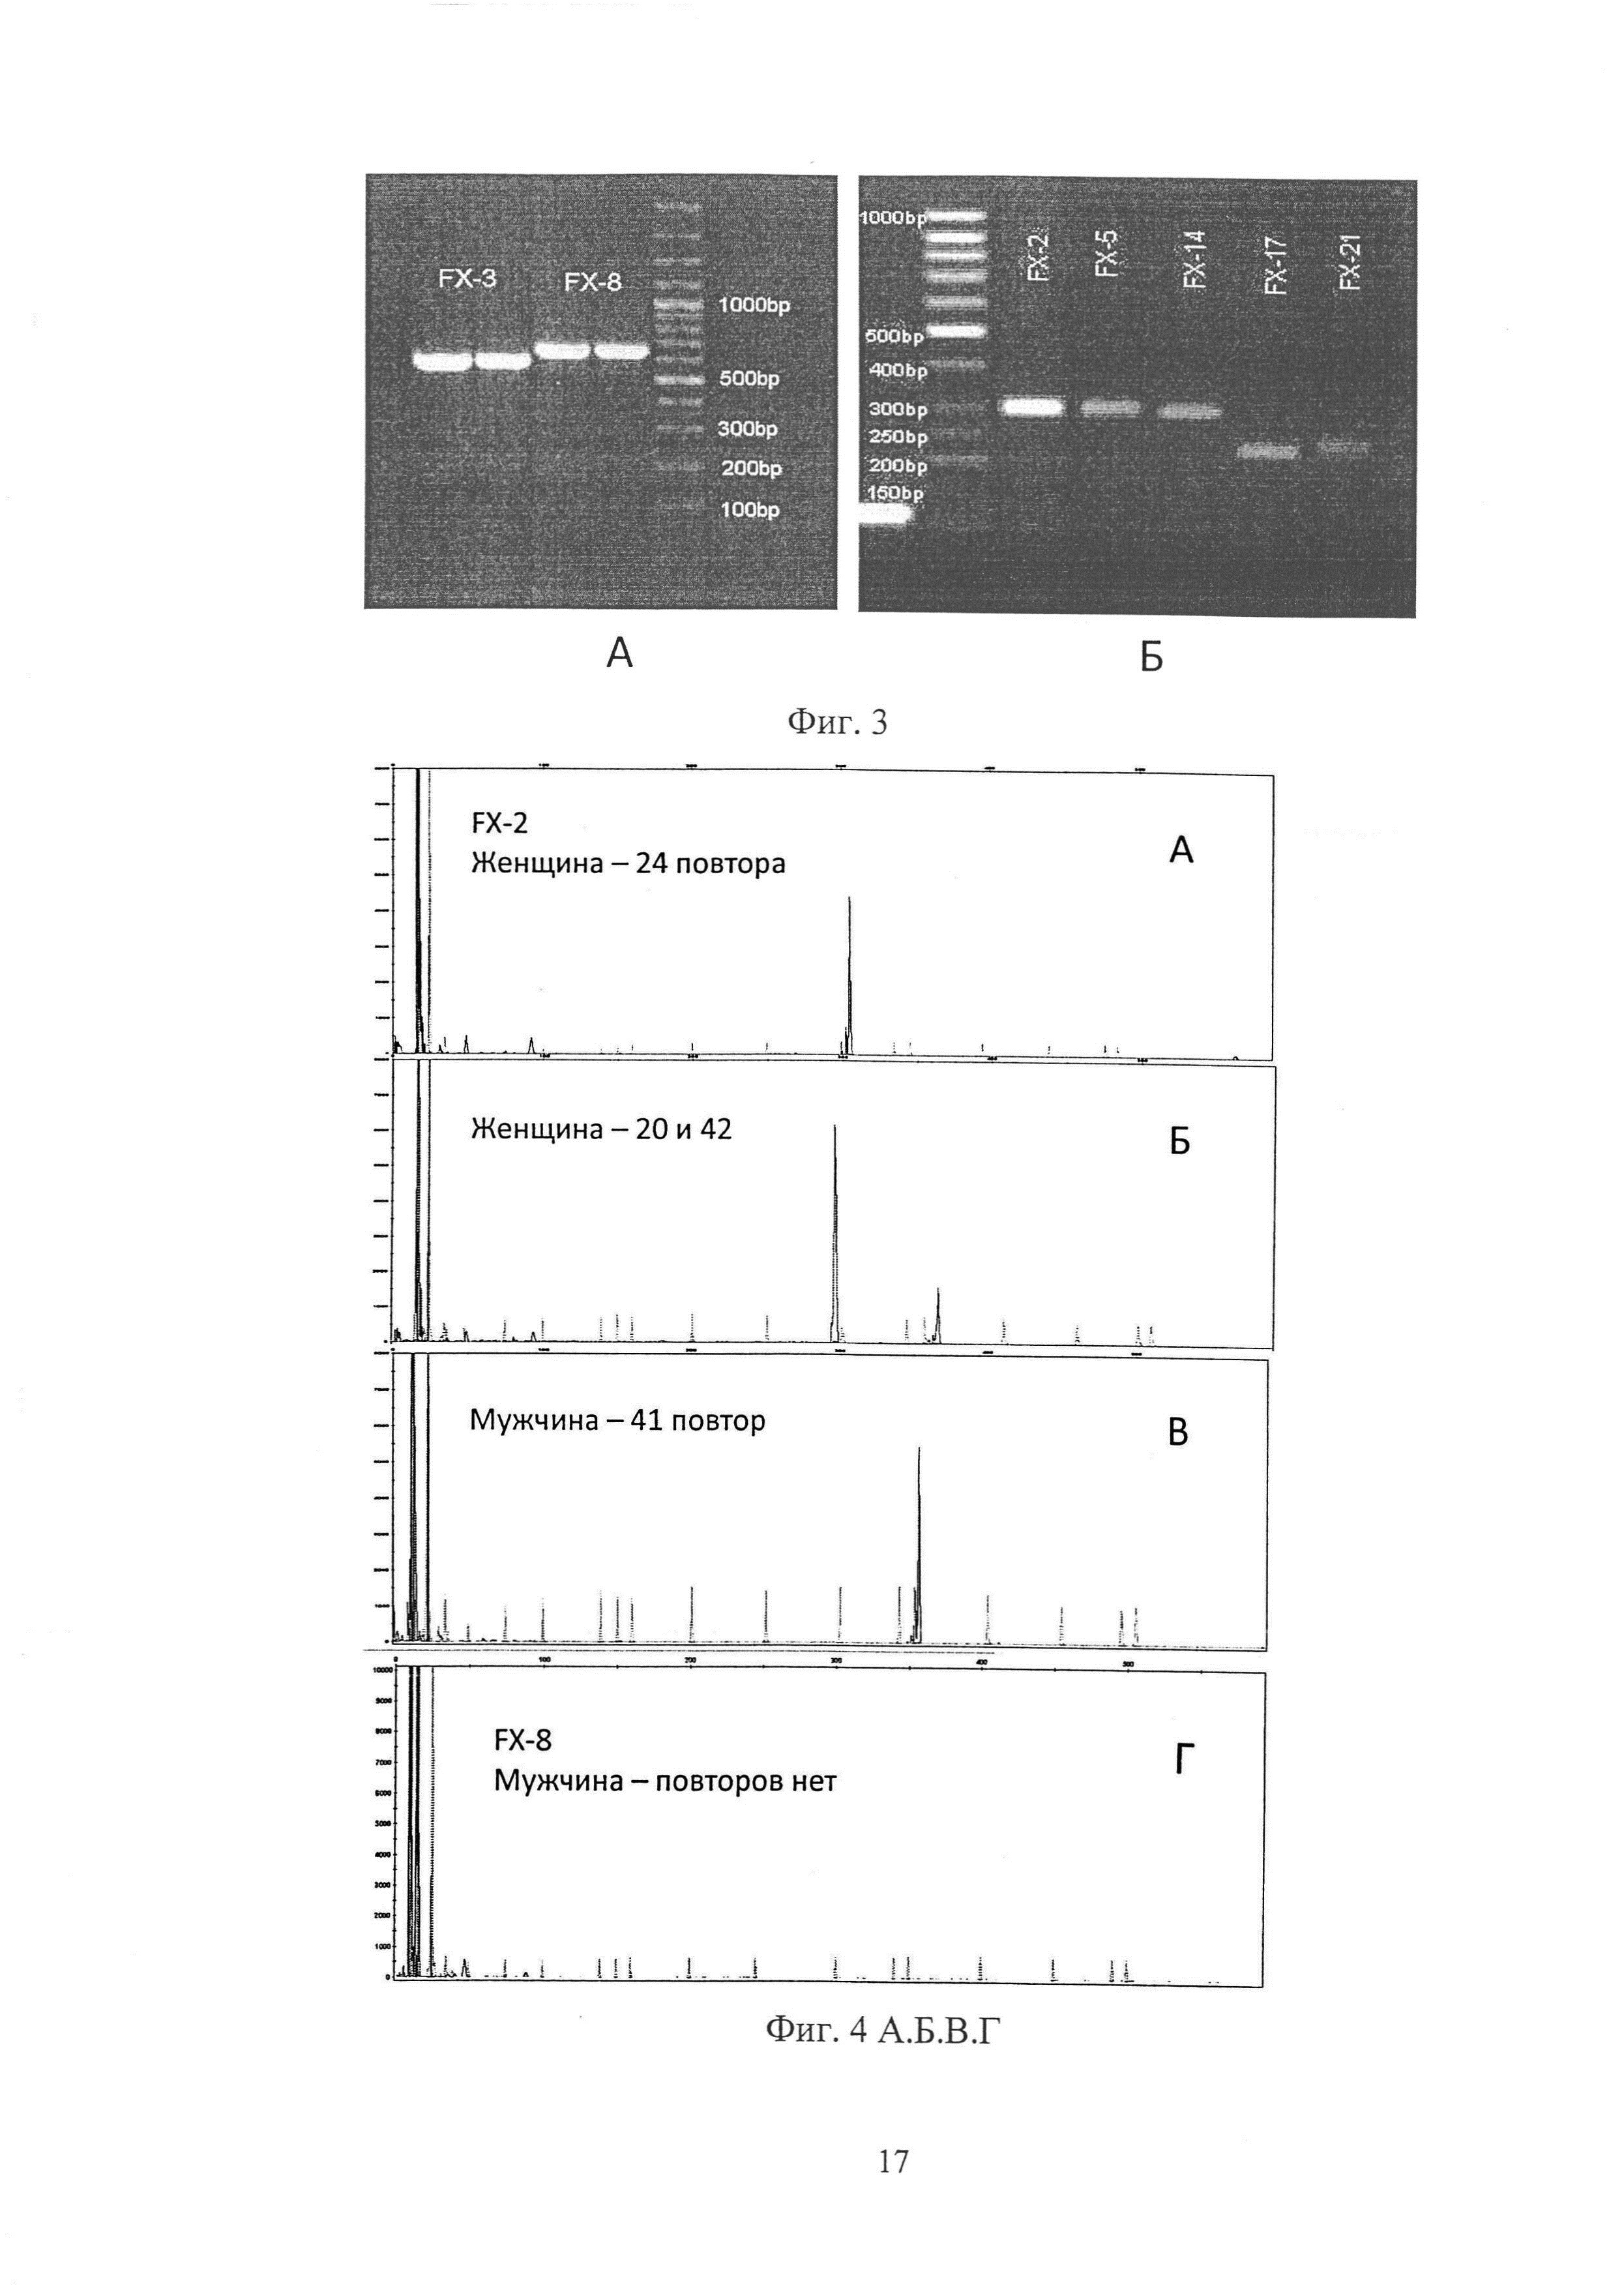 Способ выявления экспансии тринуклеотидных CGG-повторов в 5'-нетранслируемой, промоторной области гена FMR1 при заболевании синдрома атаксии/тремора, ассоциированного с ломкой Х-хромосомы (FXTAS)